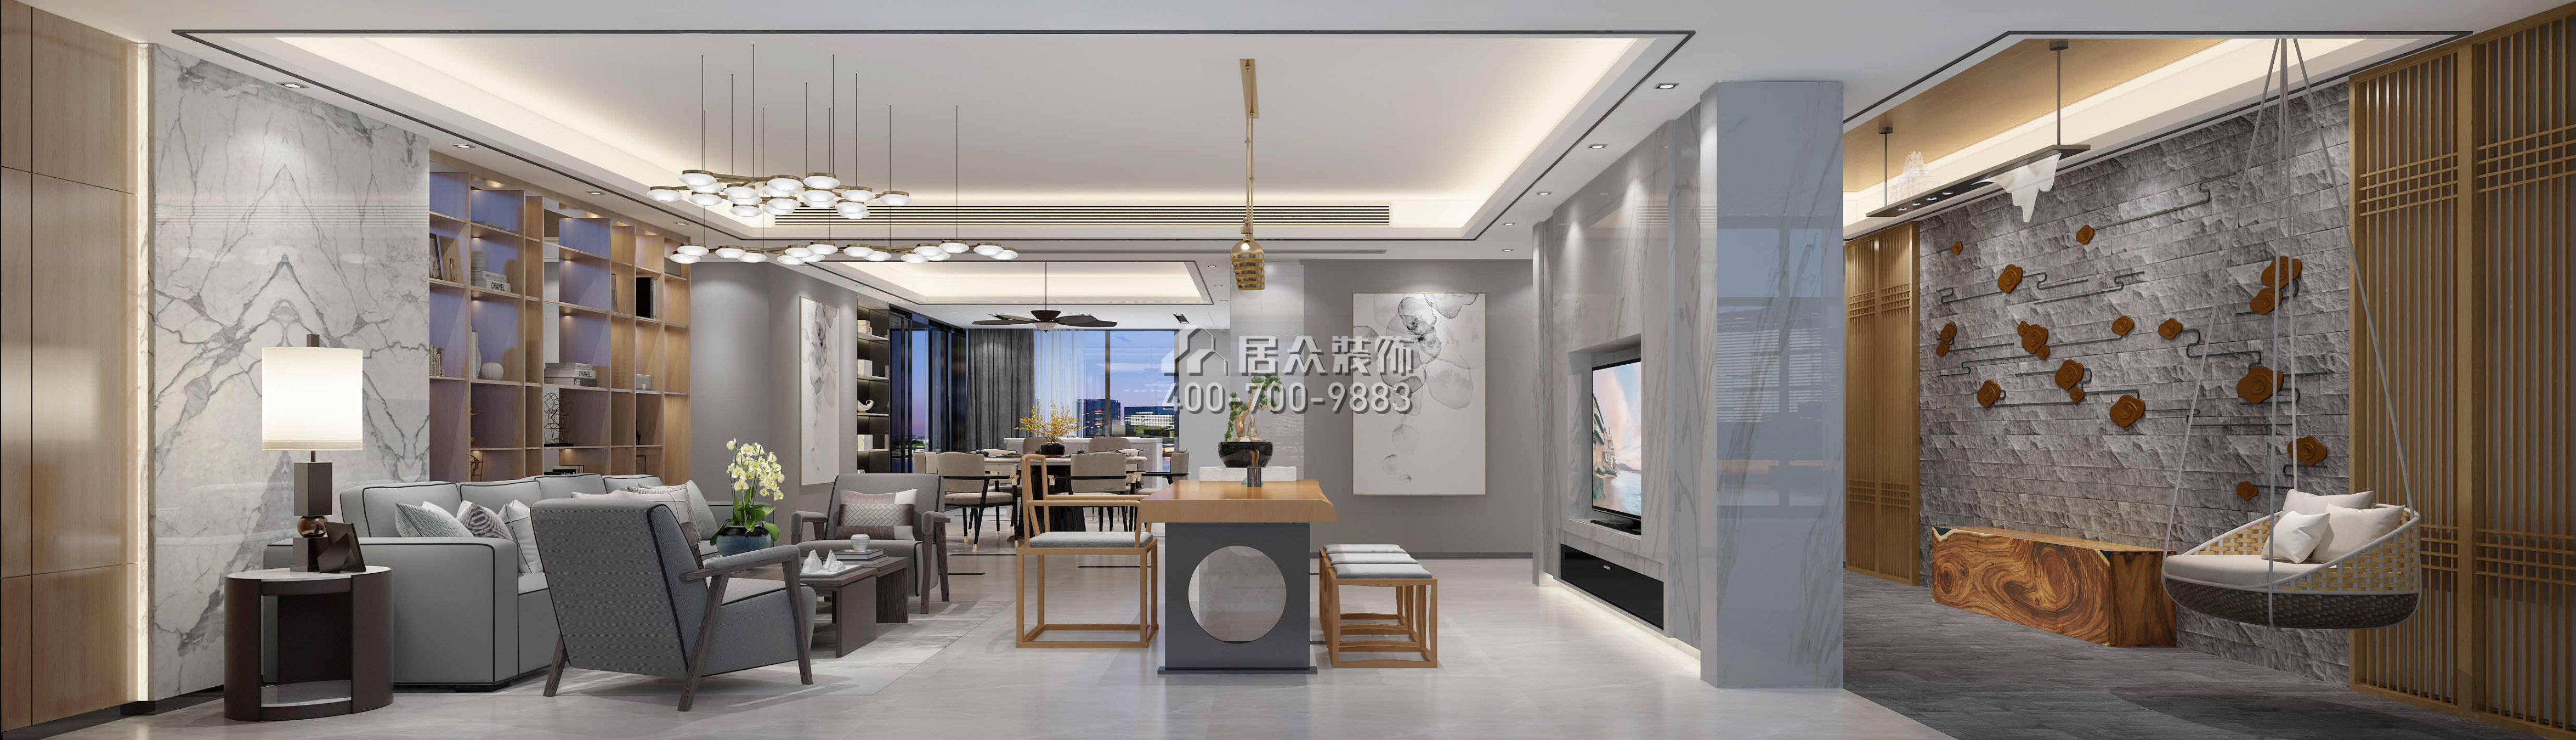 五洲花城300平方米現代簡約風格平層戶型客廳裝修效果圖